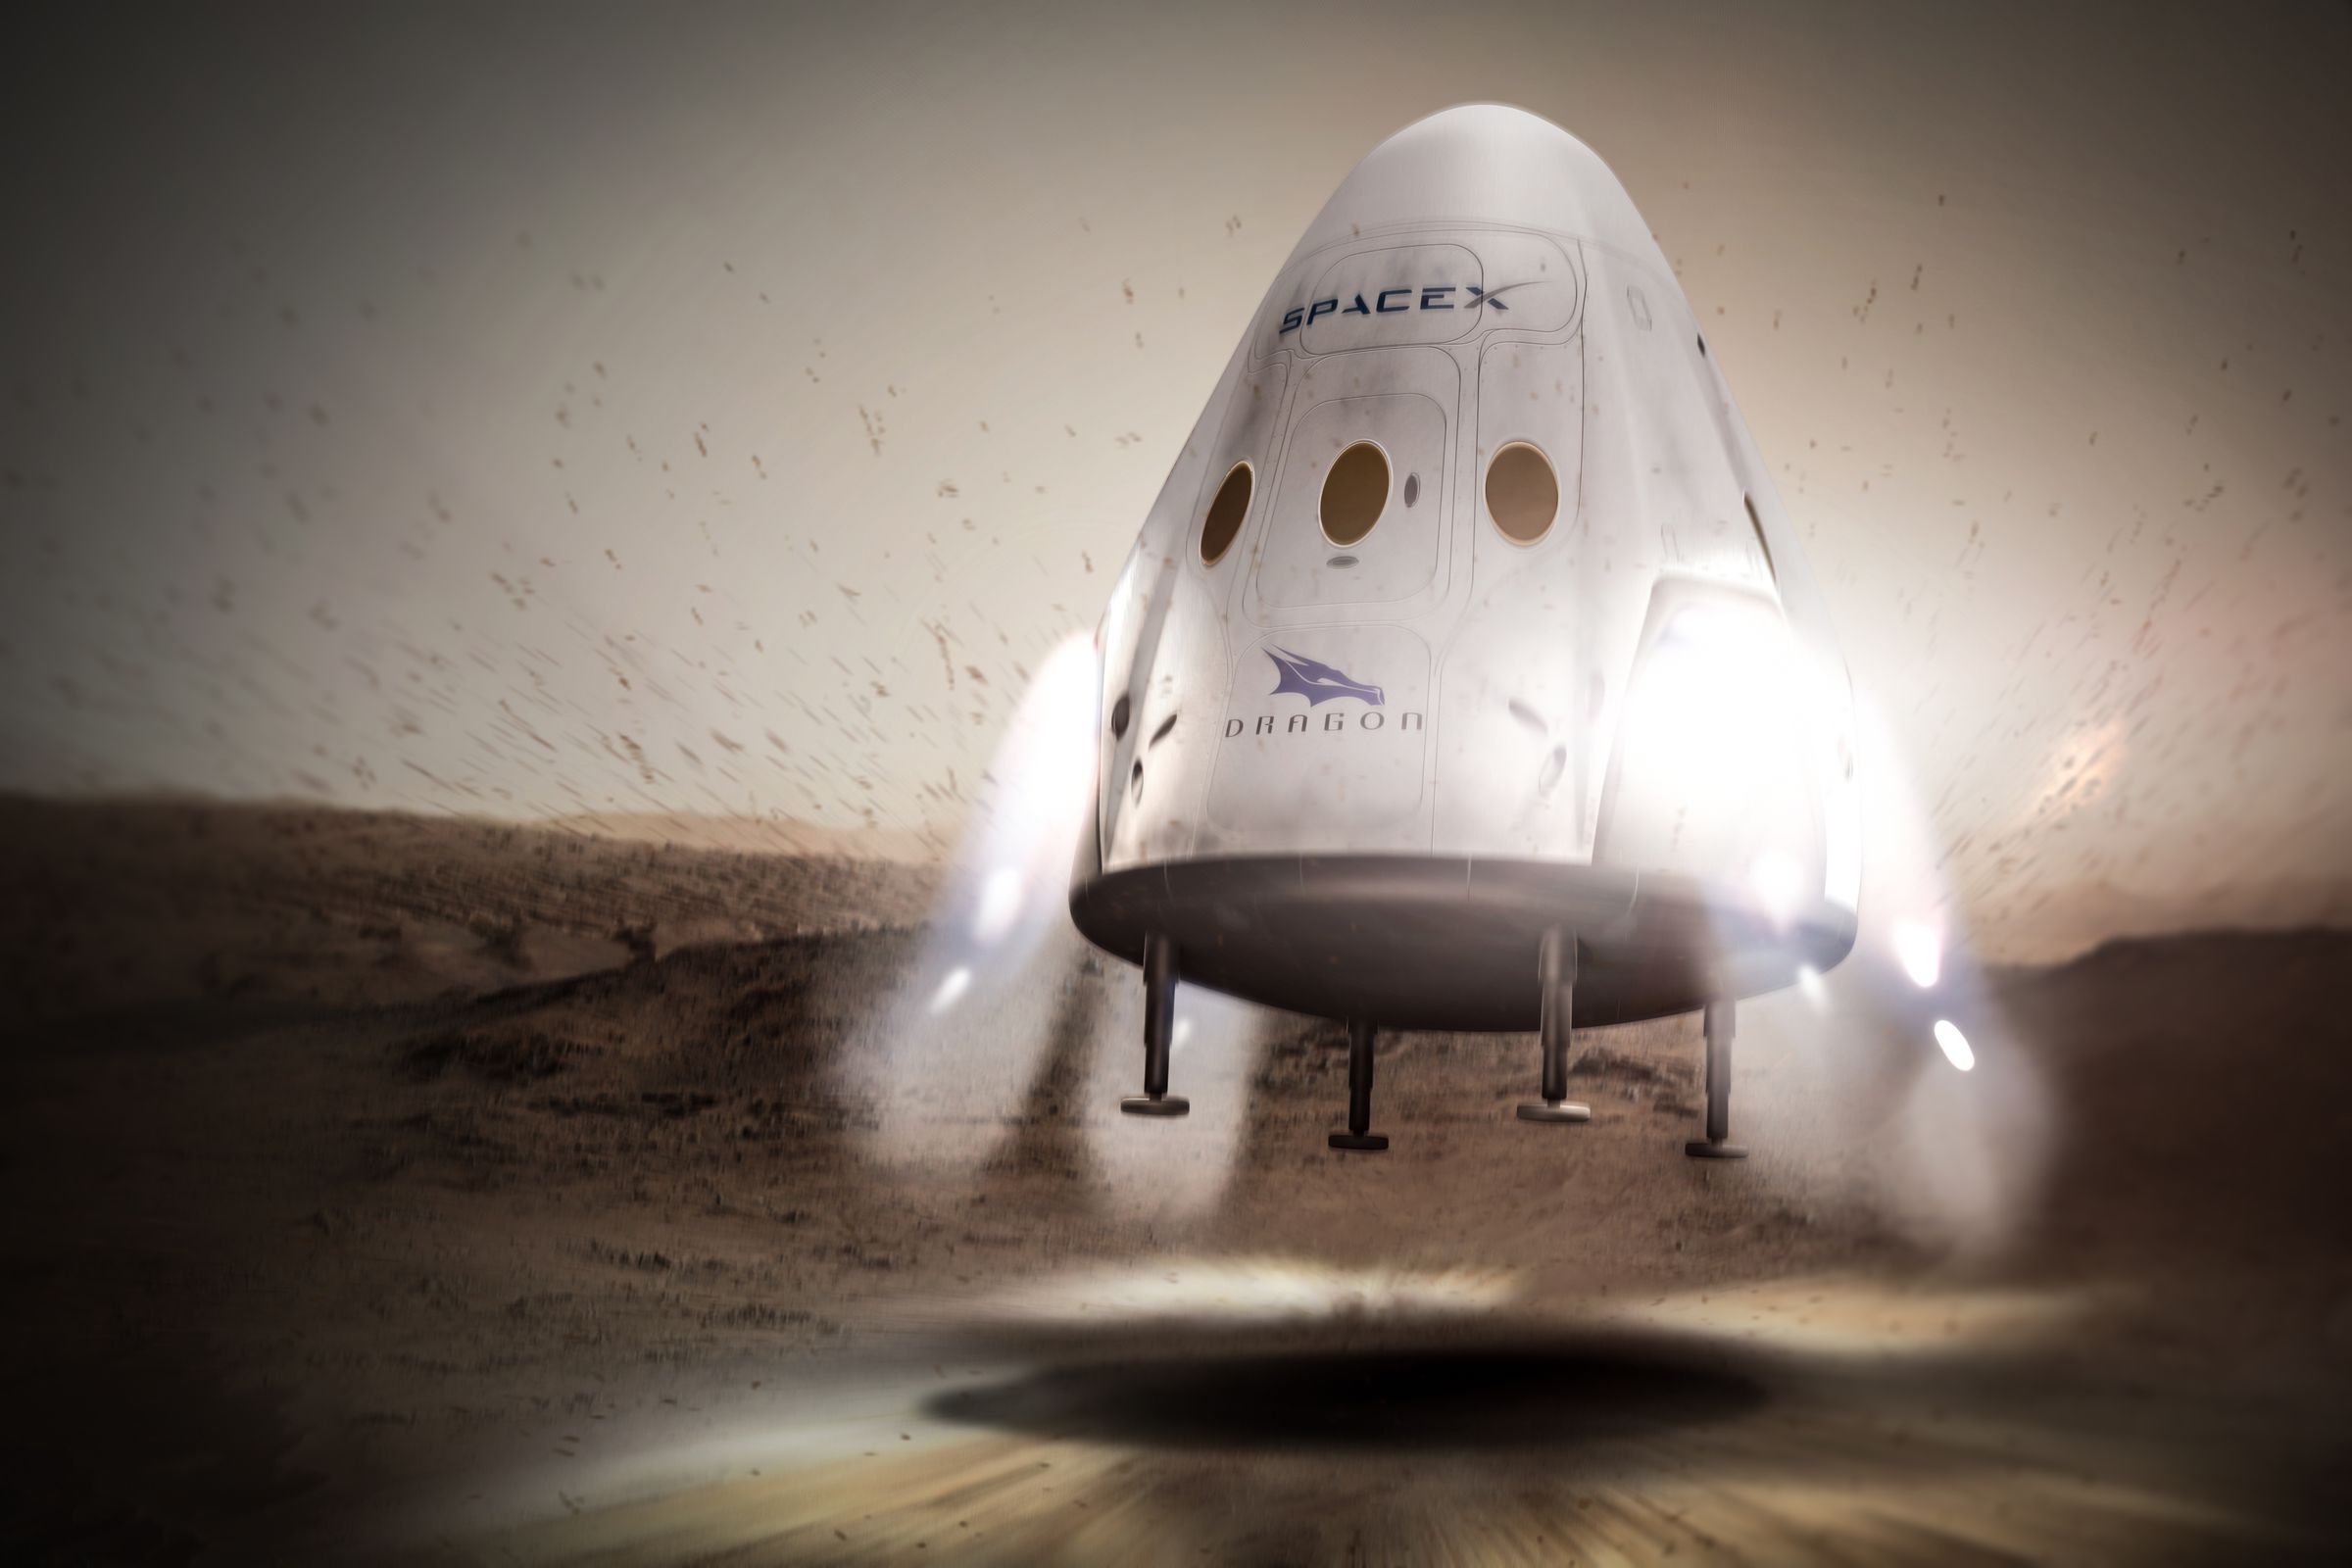 A rendering of SpaceX’s Dragon capsule landing on Mars.